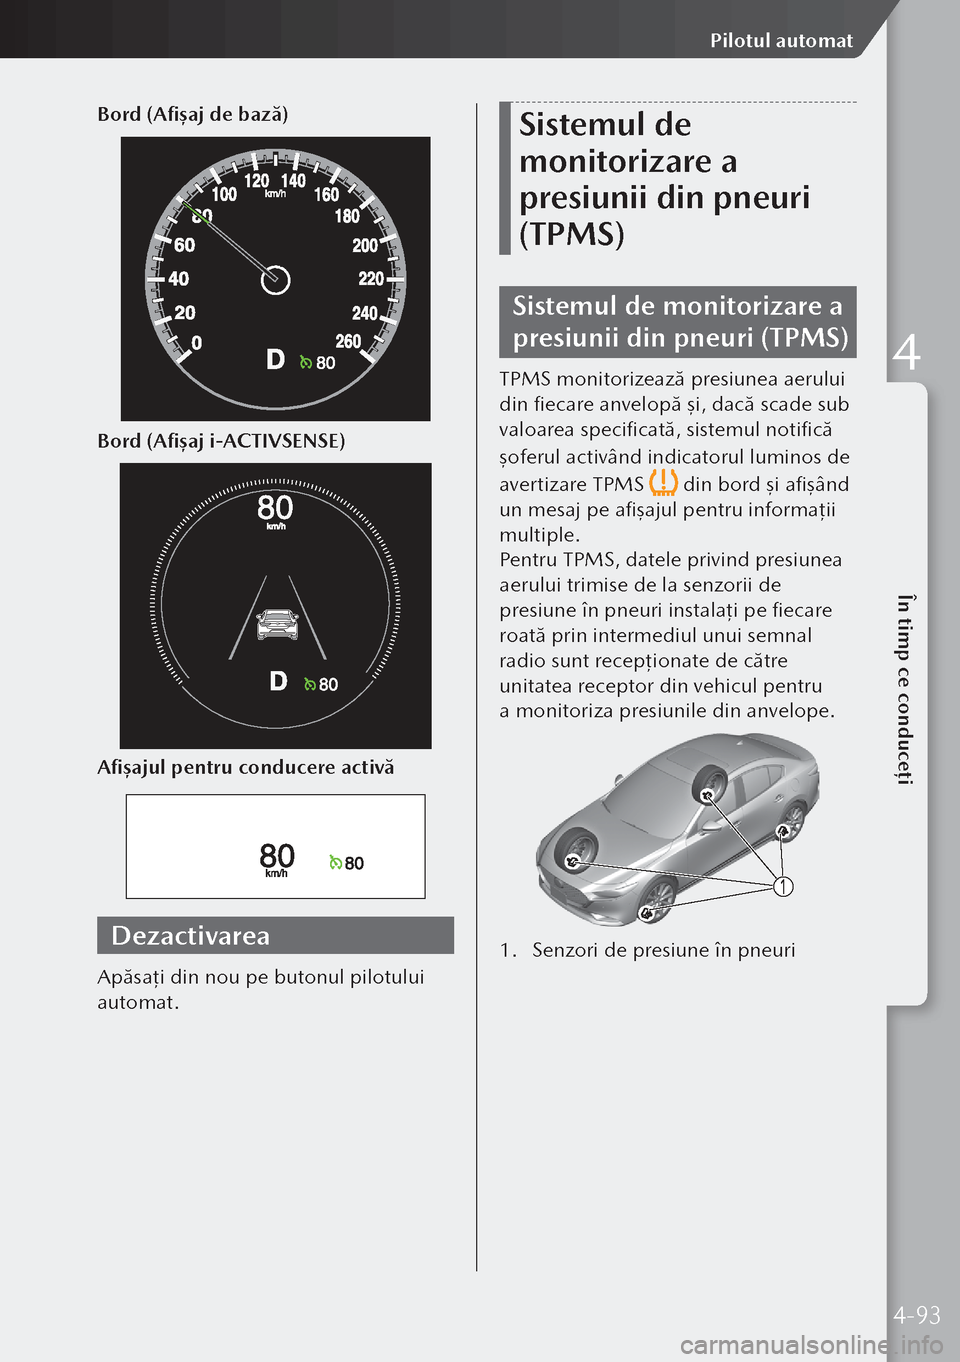 MAZDA MODEL 3 HATCHBACK 2019  Manualul de utilizare (in Romanian) Bord (Afișaj de bază)
Bord (Afișaj i-ACTIVSENSE)
Afișajul pentru conducere activă
Dezactivarea
Apăsaţi din nou pe butonul pilotului 
automat.
Sistemul de 
monitorizare a 
presiunii din pneuri 
